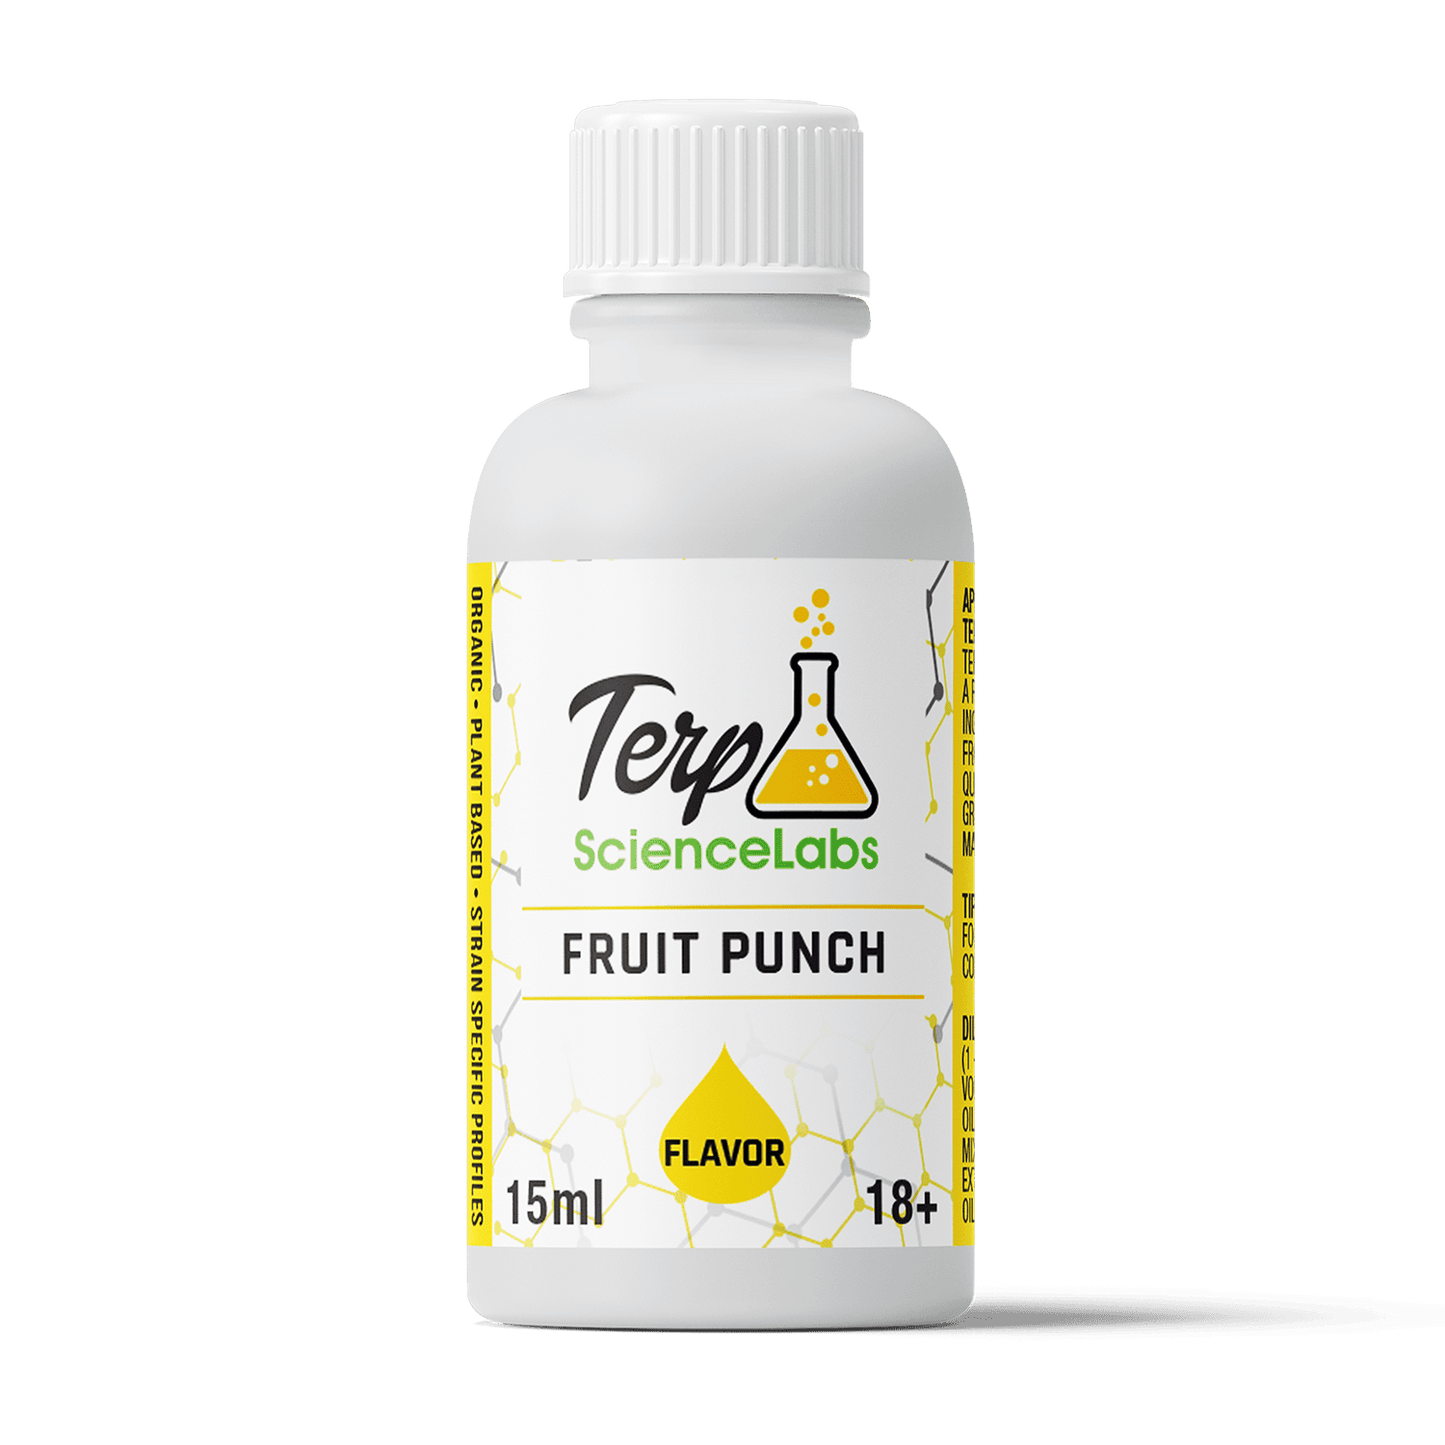 Fruit Punch Flavor Profile